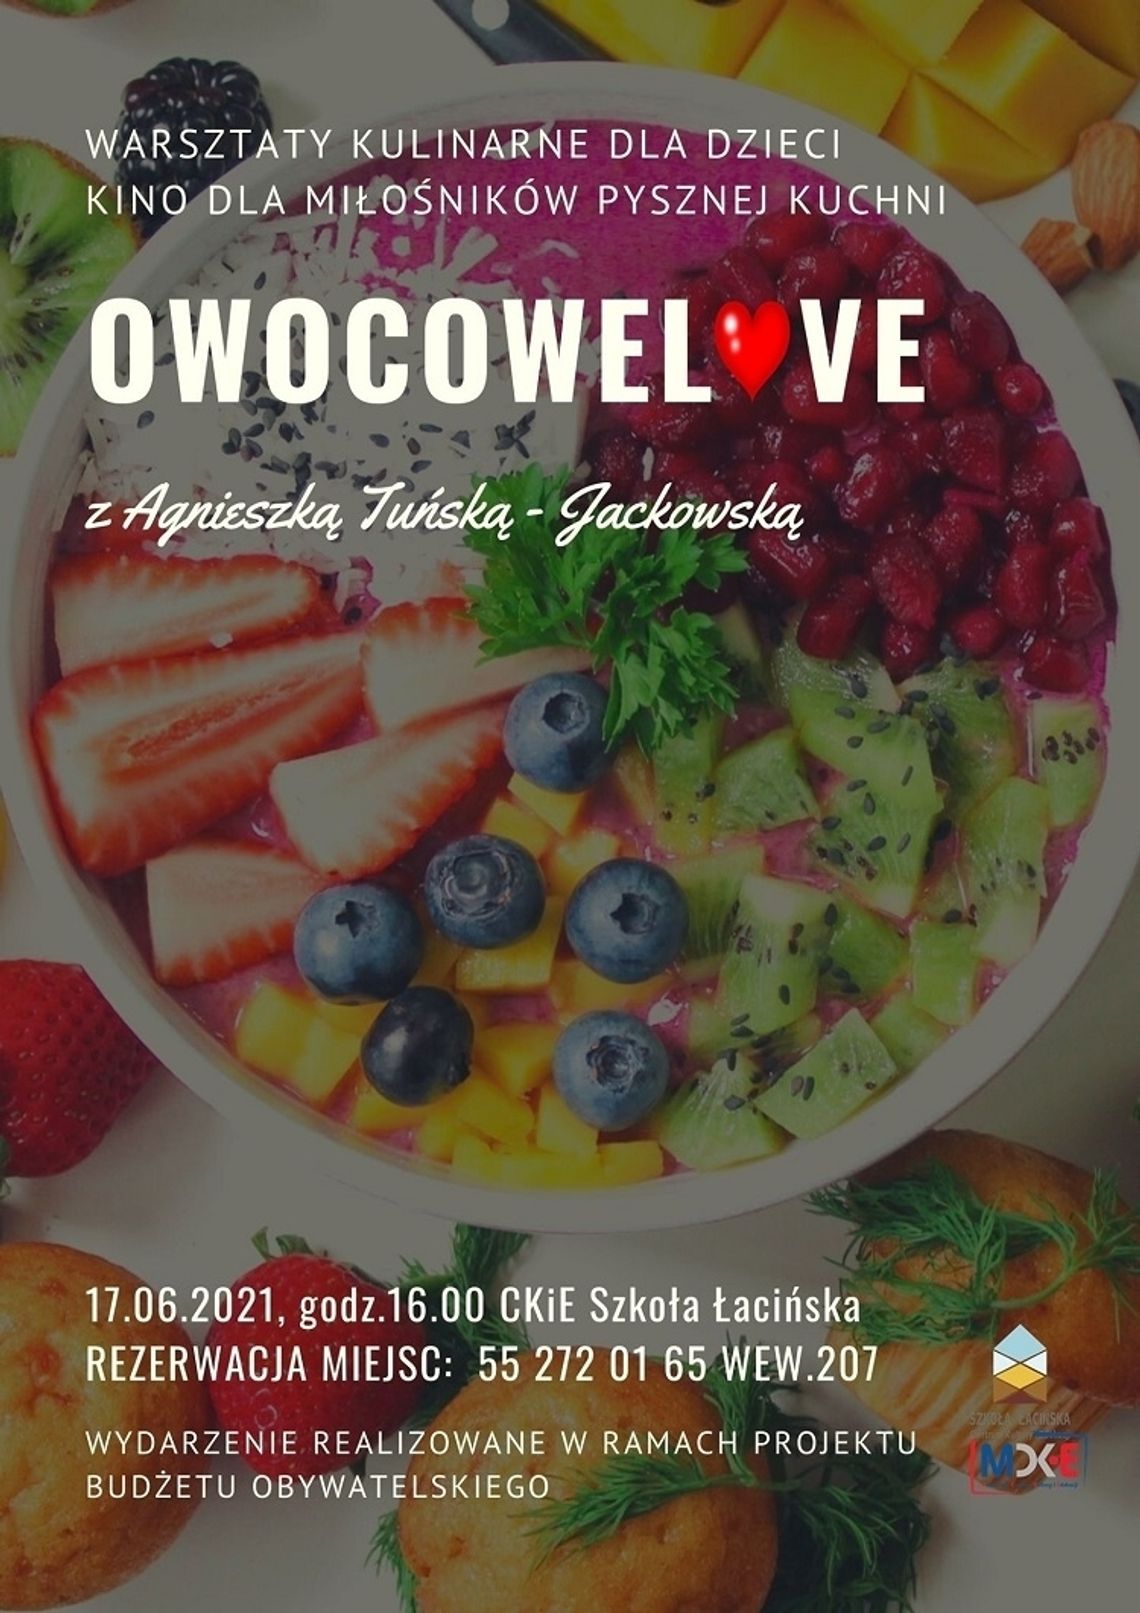 Owocowe Love - warsztaty kulinarne dla dzieci w Malborku